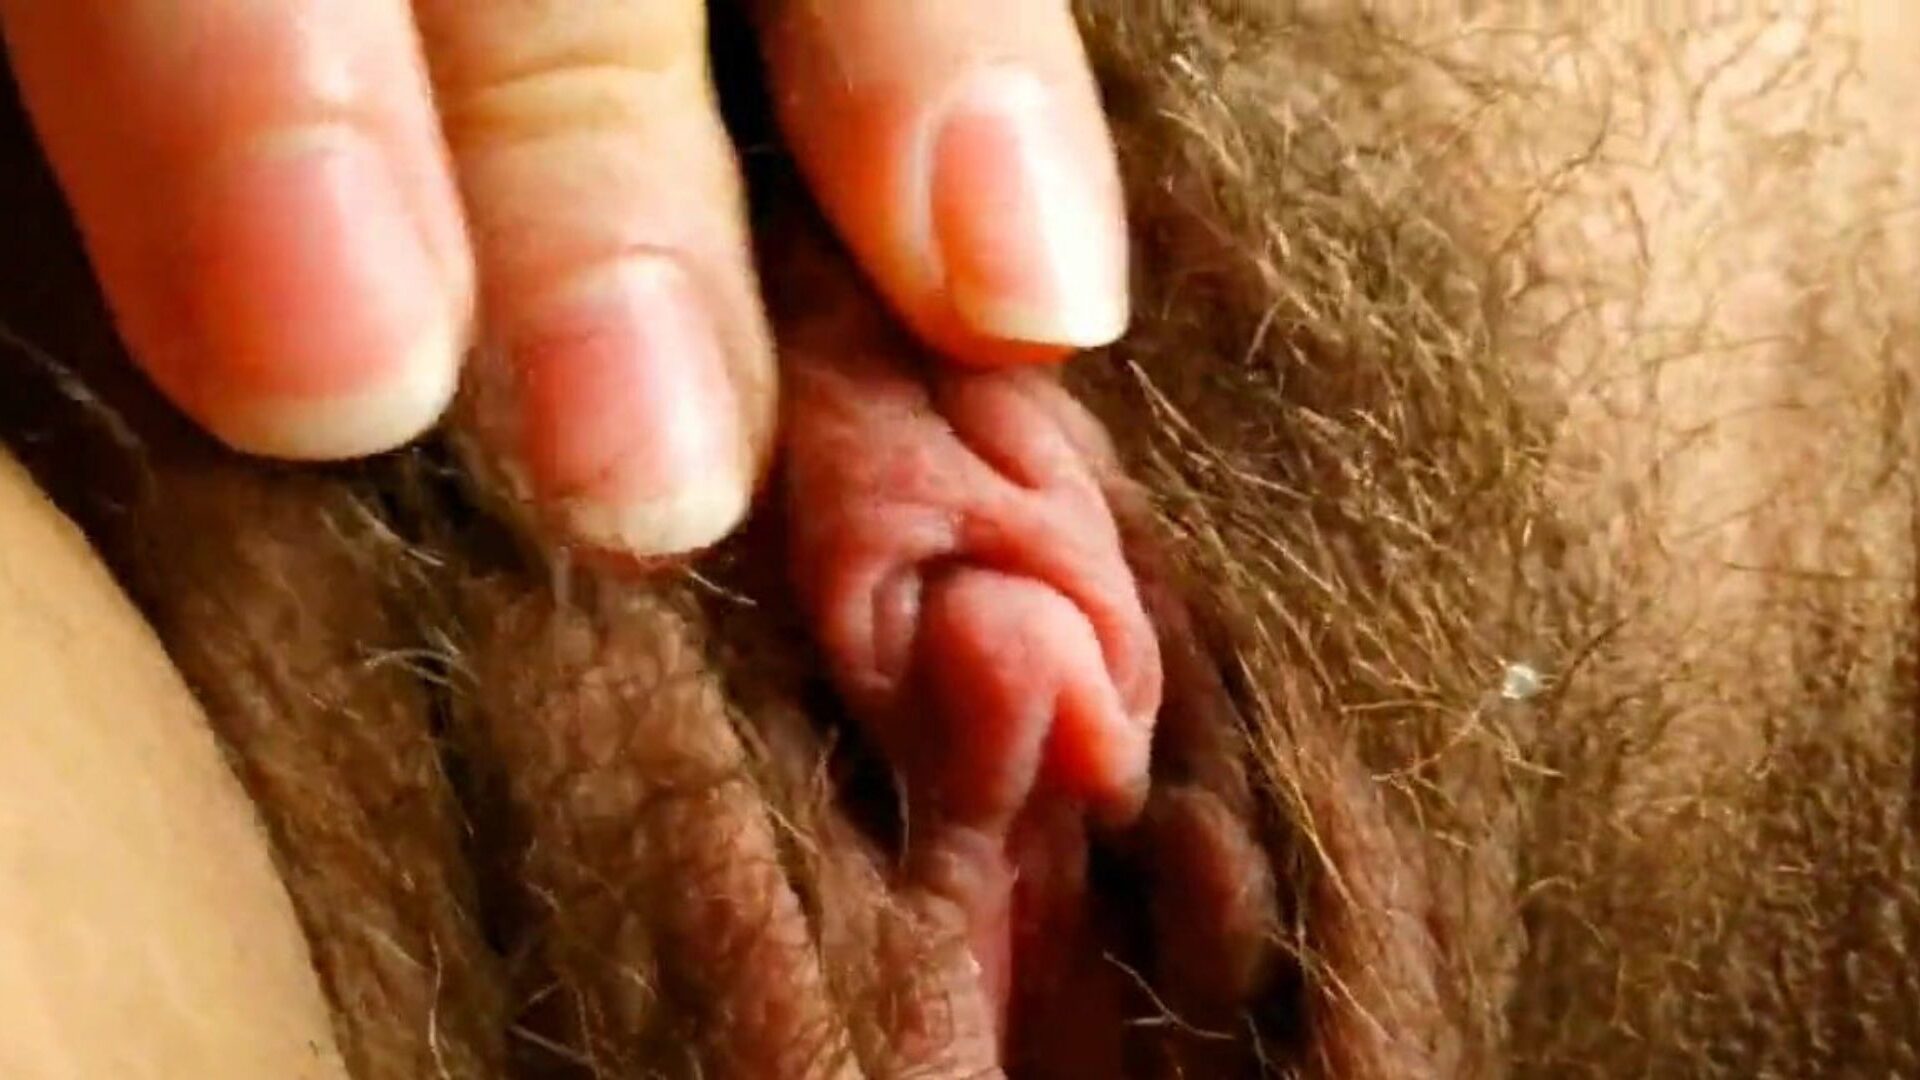 这是你见过的最性感的大阴蒂：高清色情af观看这是你见过的xhamster视频上的最性感大阴蒂-免费的巴西毛茸茸的高清铁杆色情管视频的最终集合